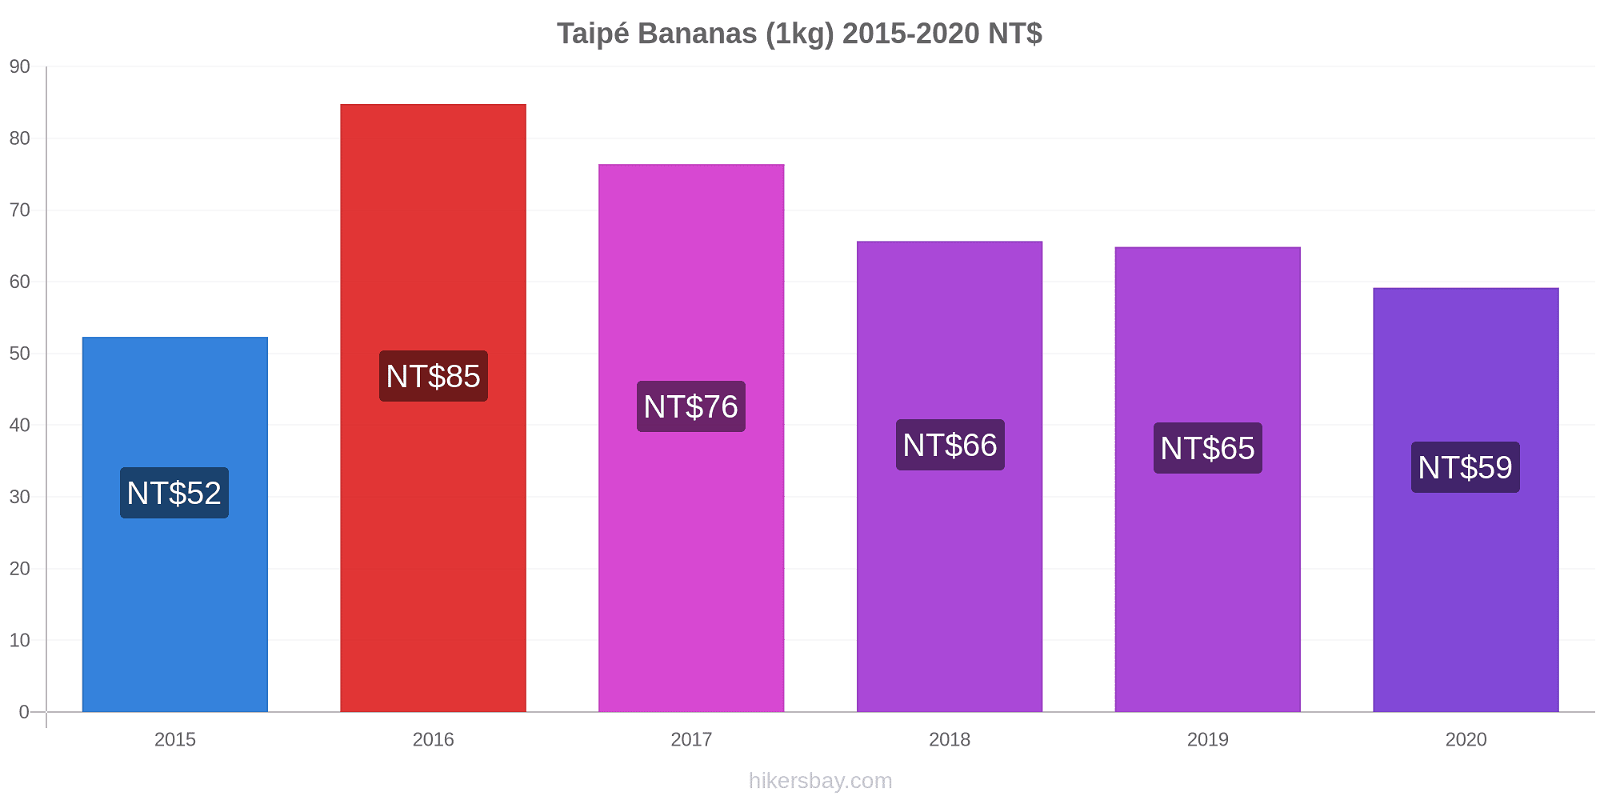 Taipé variação de preço Banana (1kg) hikersbay.com